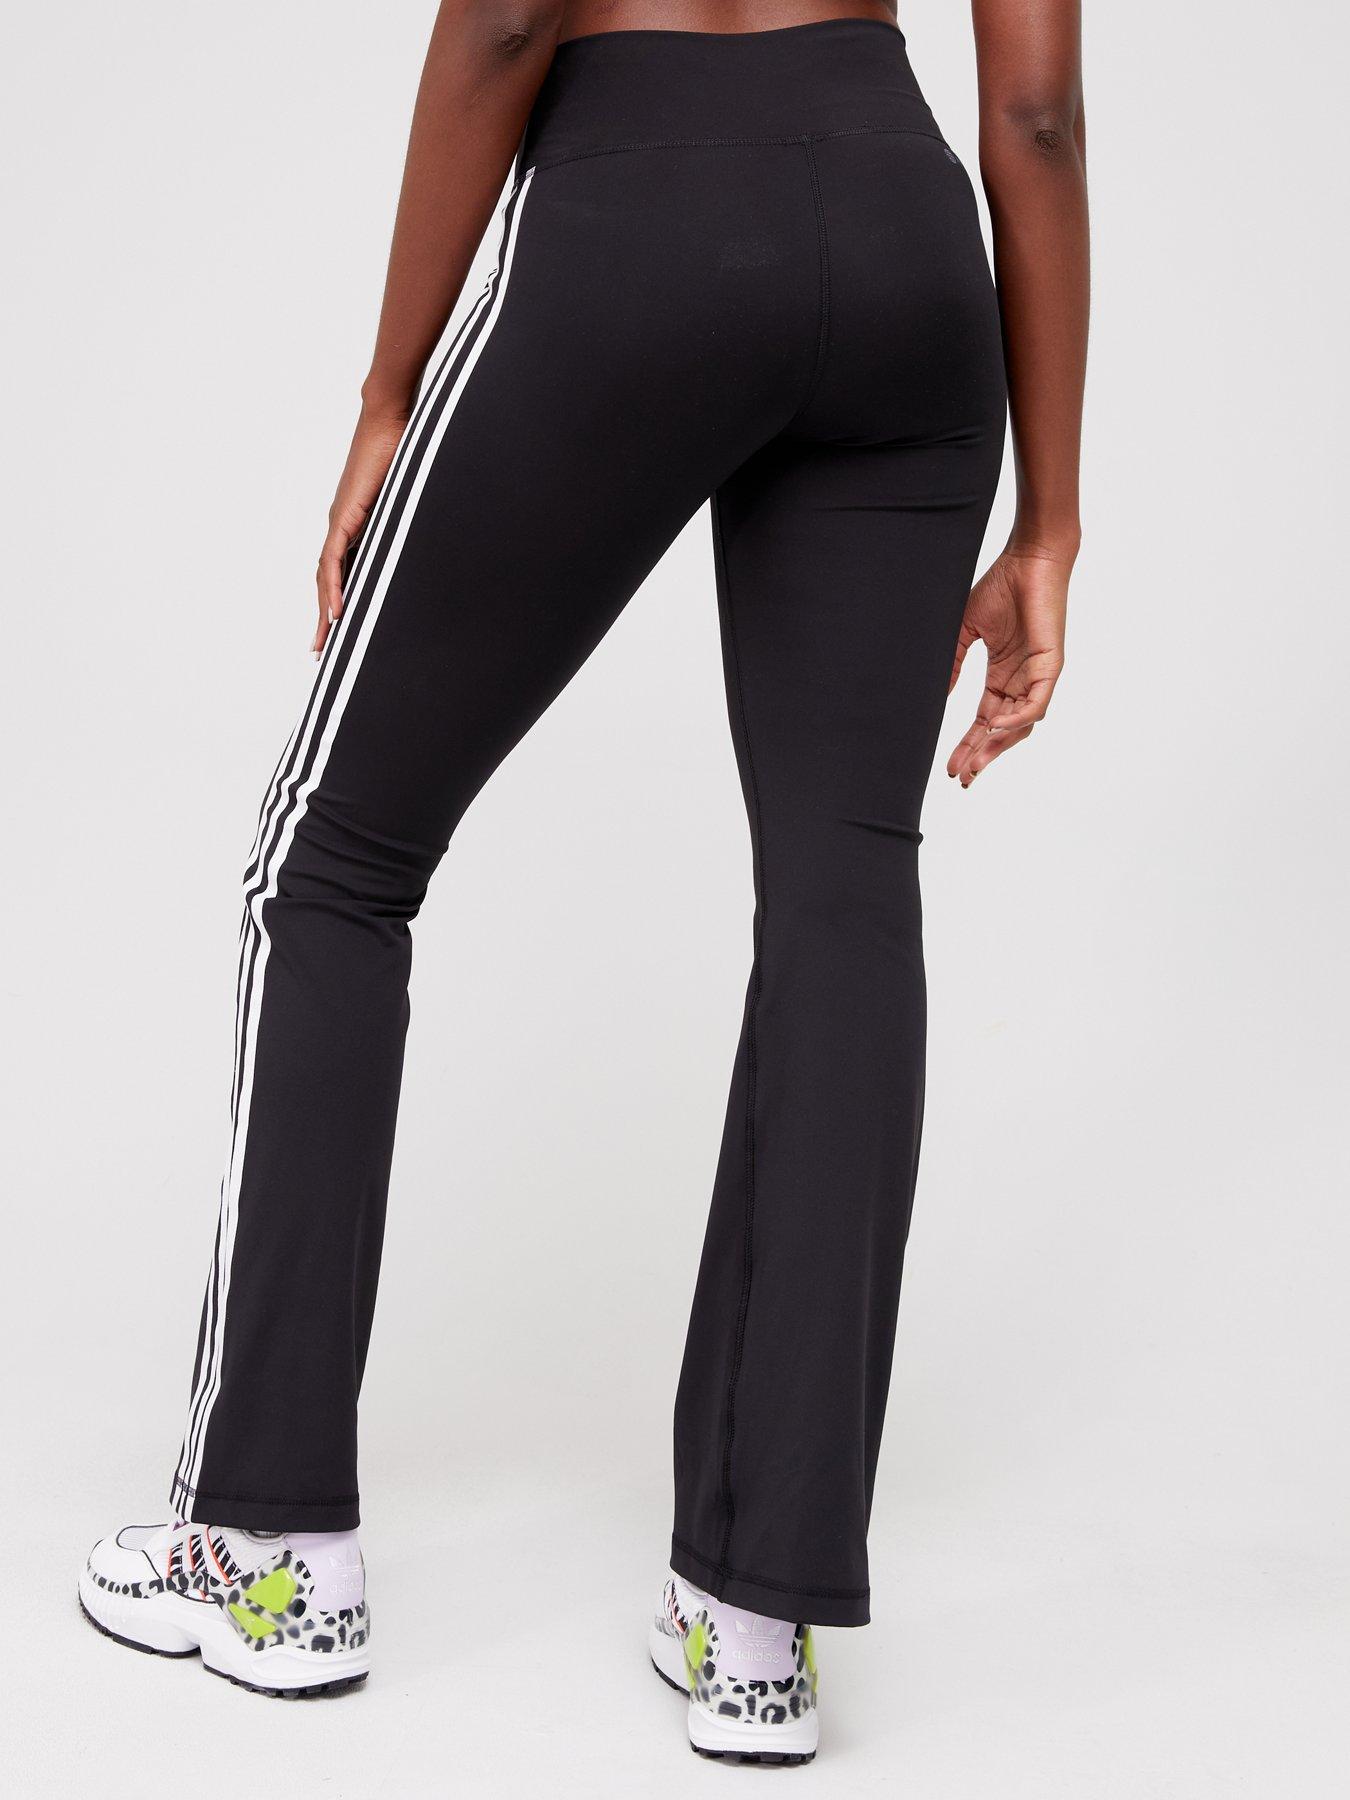 ADIDAS ORIGINALS FLARED LEGGINGS, Black Women's Casual Pants